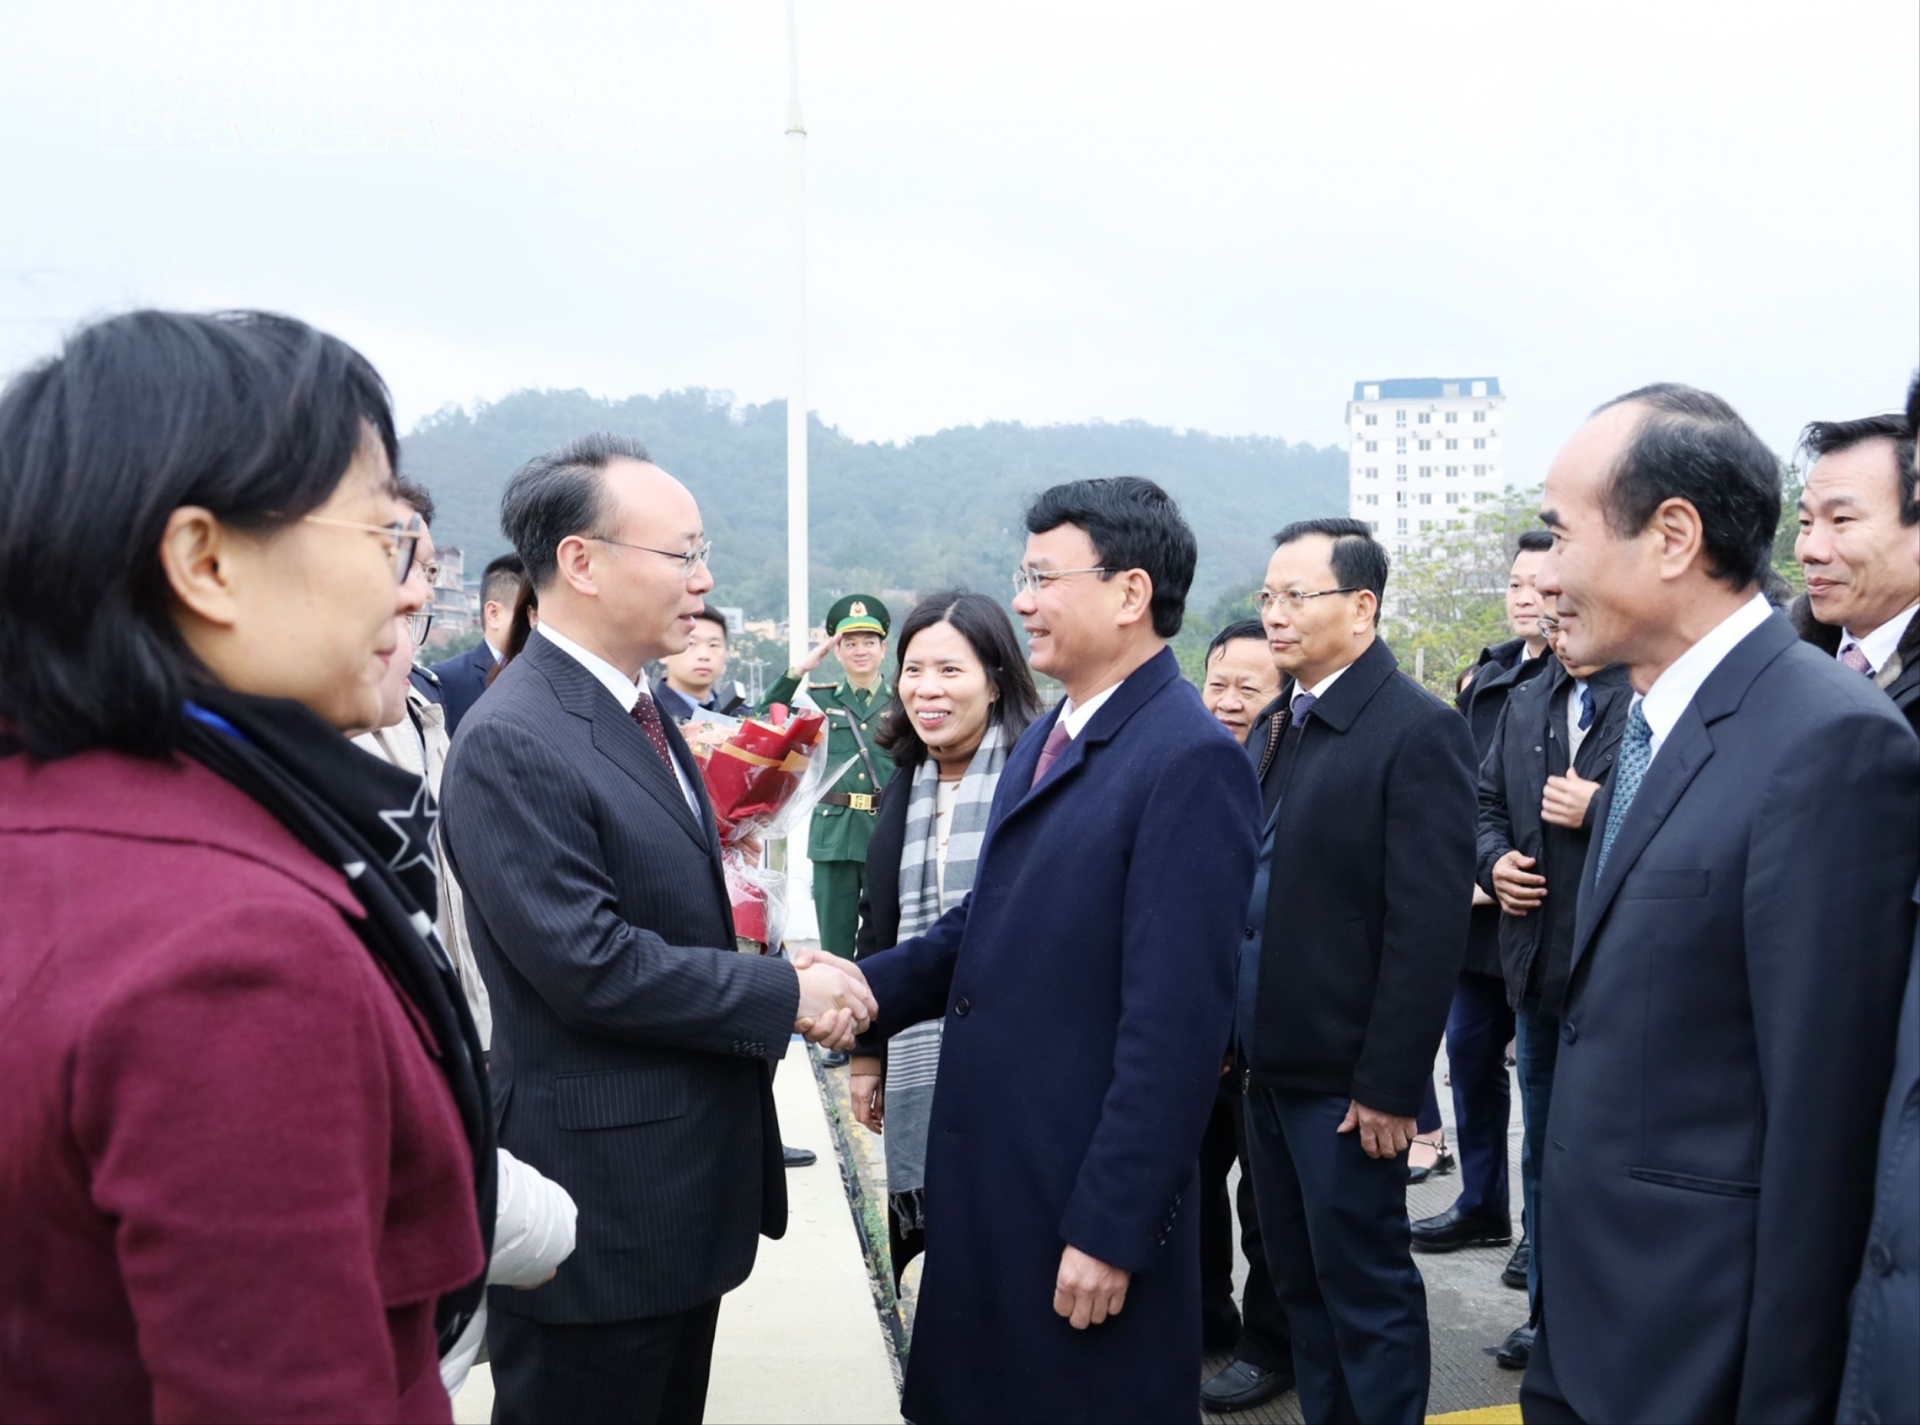 省委书记此次工作访问将助力于深化老街省与云南省的友好合作关系。